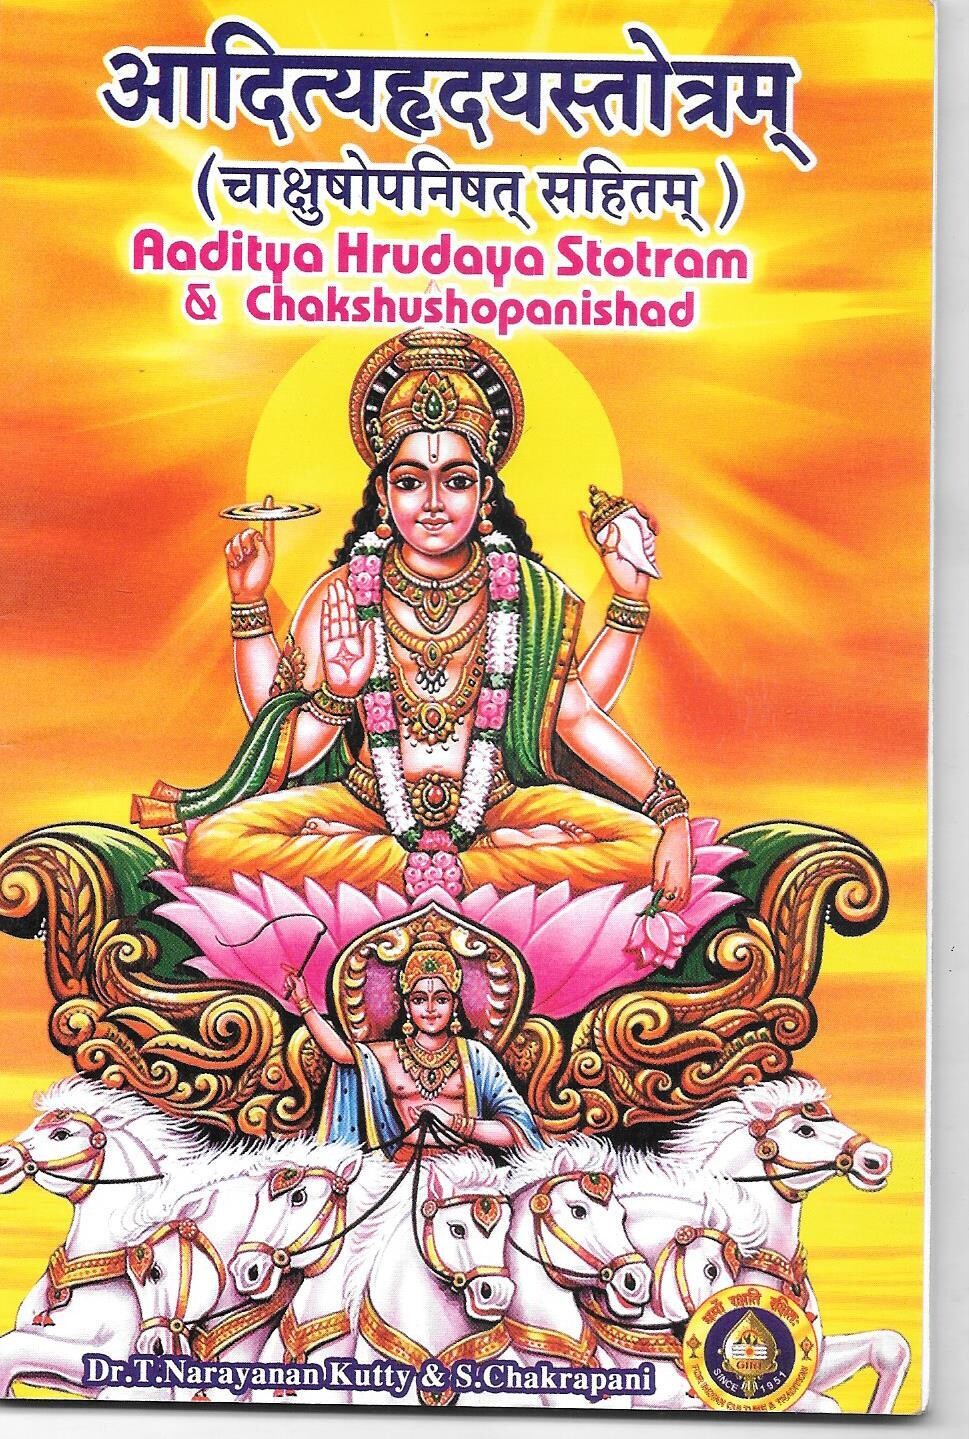 Aaditya Hrudaya Stotram sanskrit